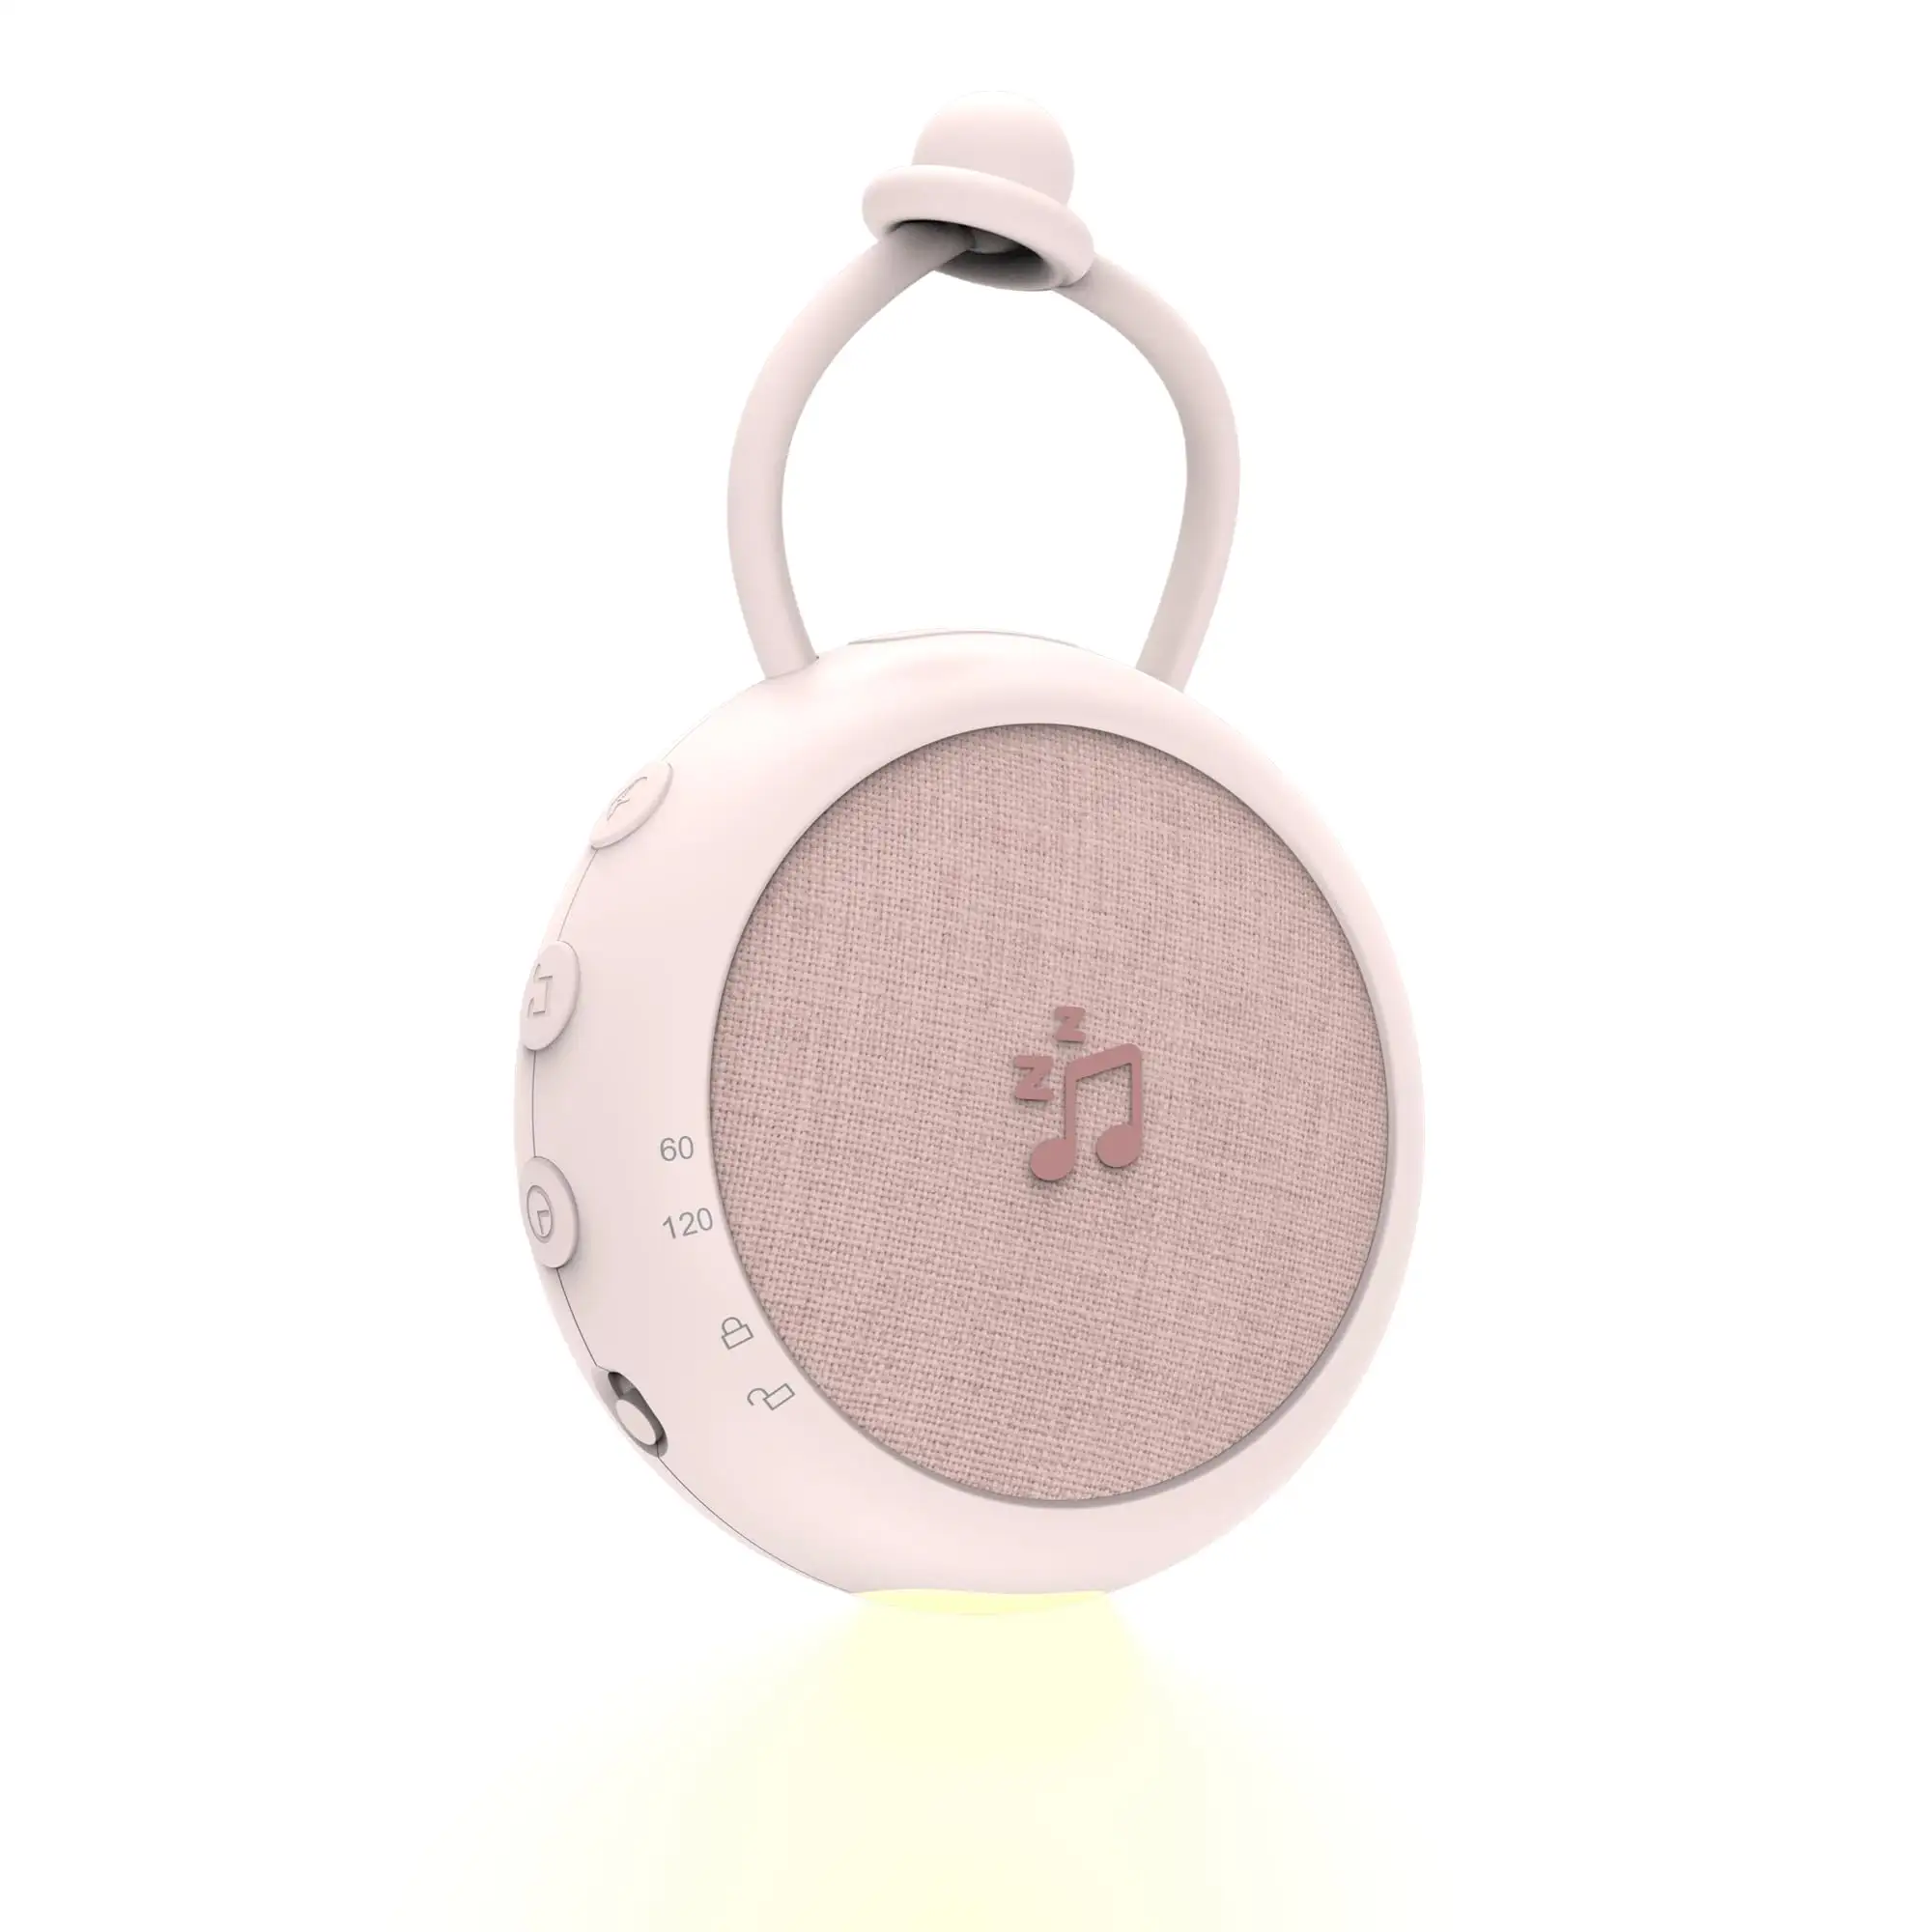 Di alta qualità ricaricabile sonno macchina Mini portatile rumore bianco macchina luce notturna per il bambino appeso